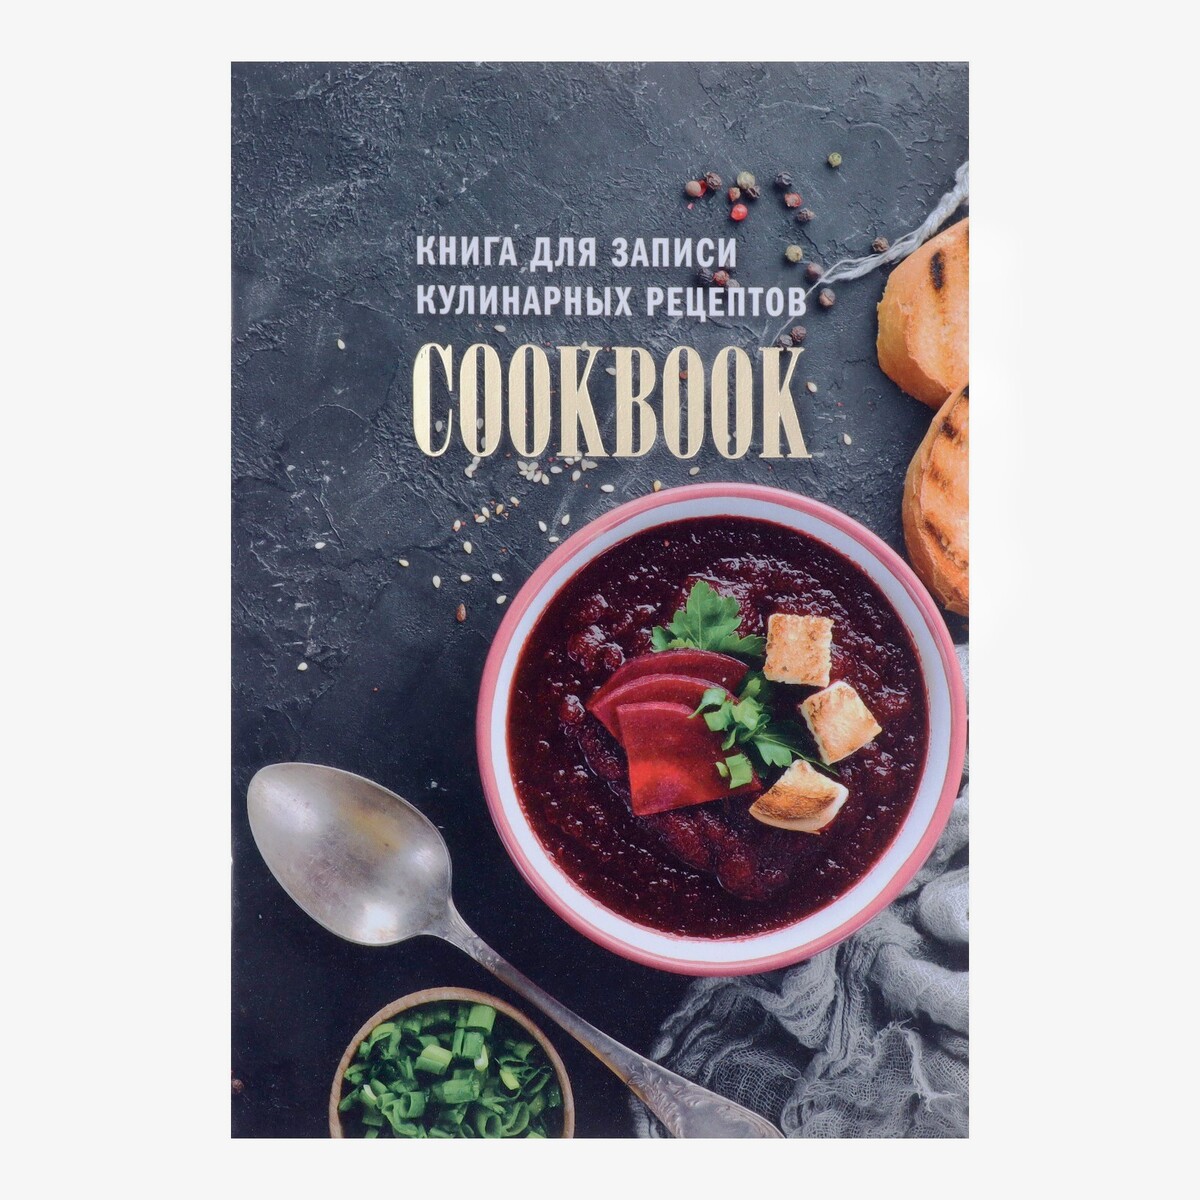 Книга для записи кулинарных рецептов а5, 48 листов книга для записи кул рецептов а5 48л кофебара